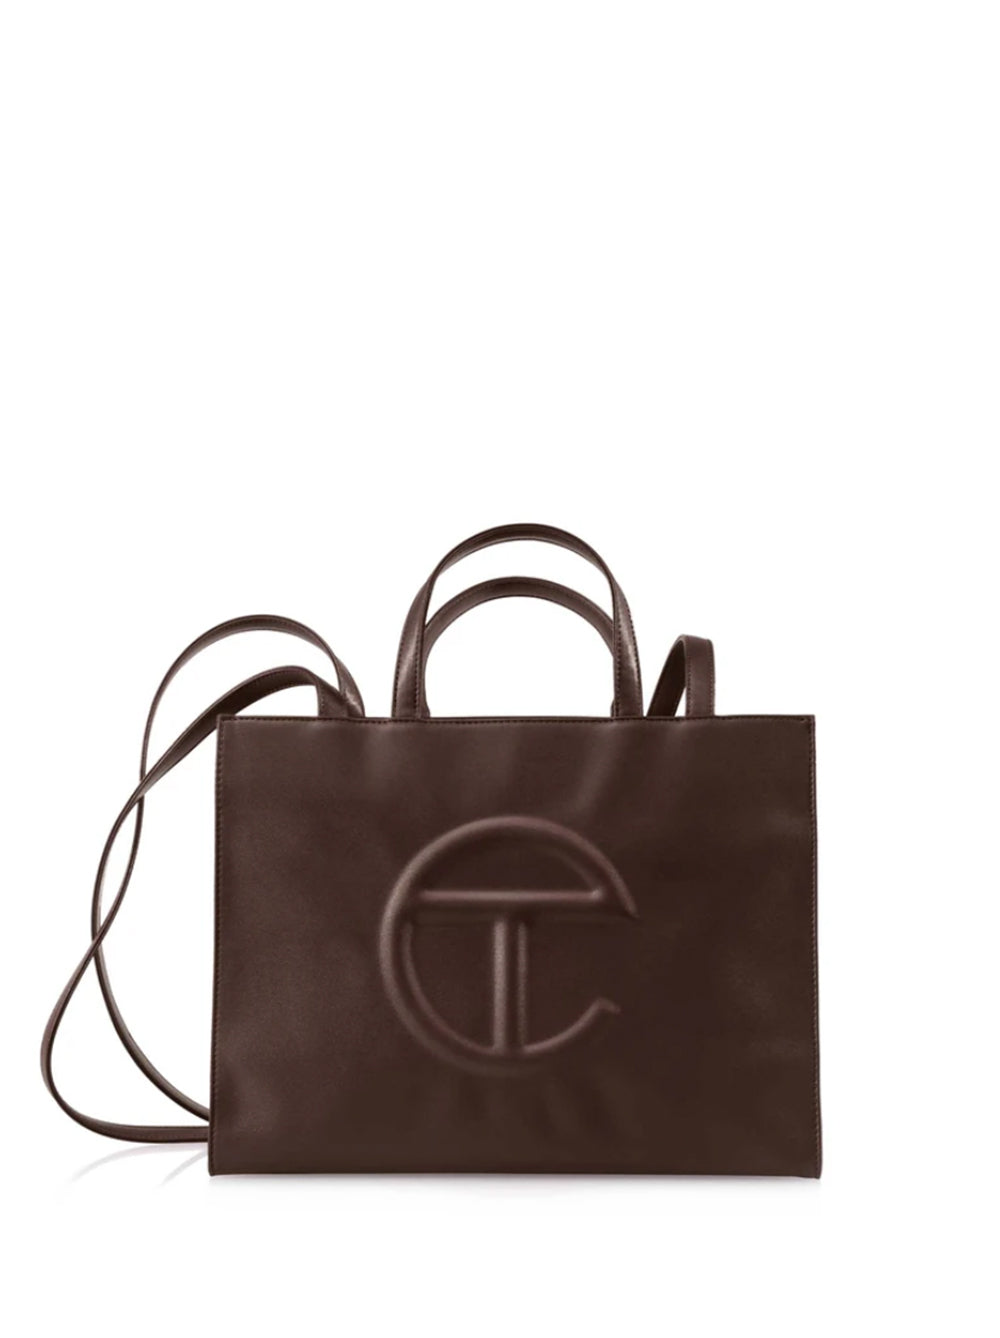 Telfar Shopping Bag Medium Chocolate